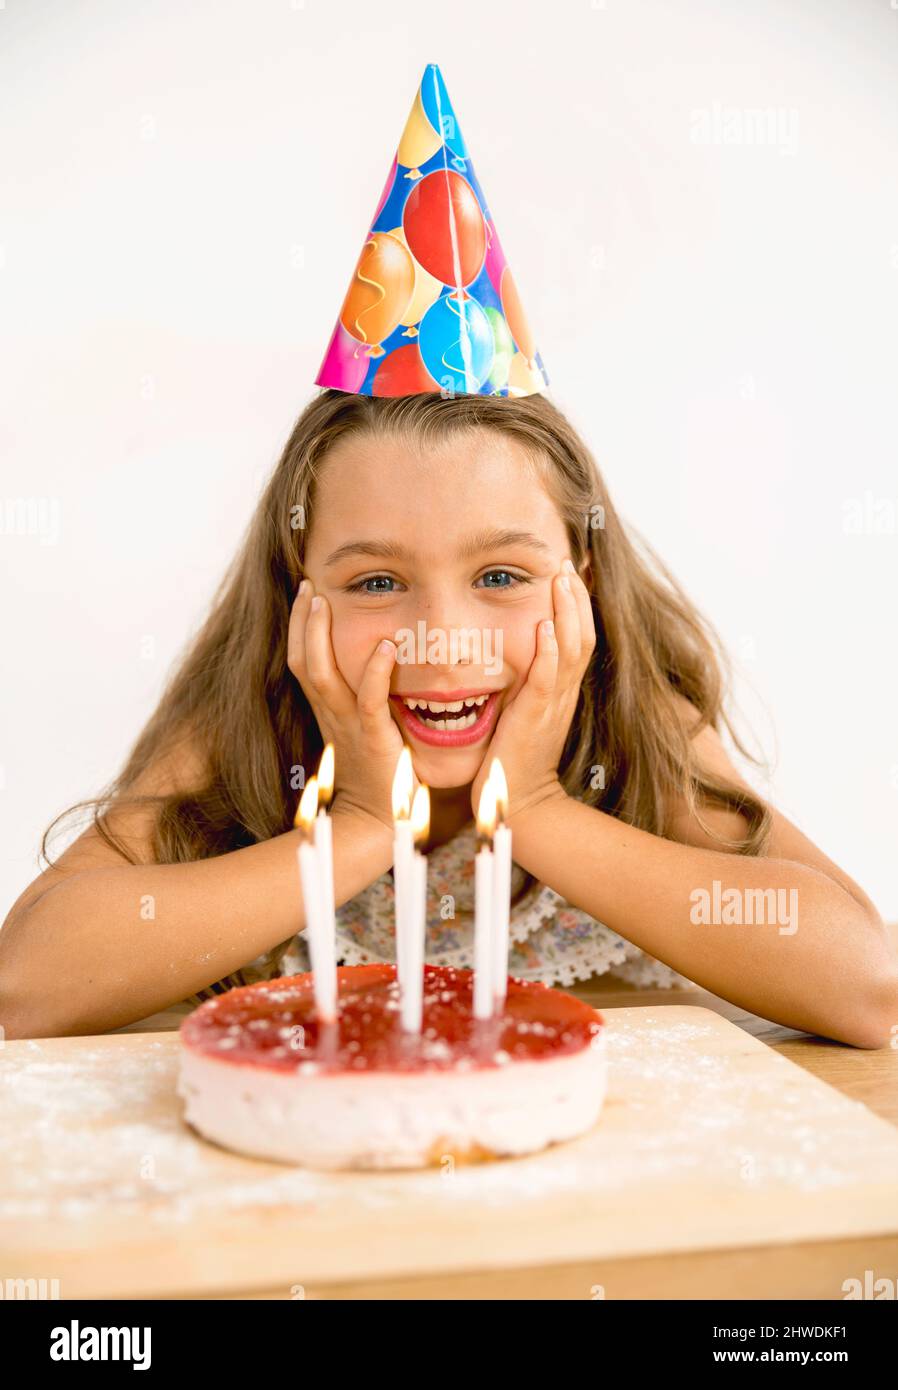 Aufnahme eines glücklichen jungen Mädchens, das ihre birthday9 feiert Stockfoto